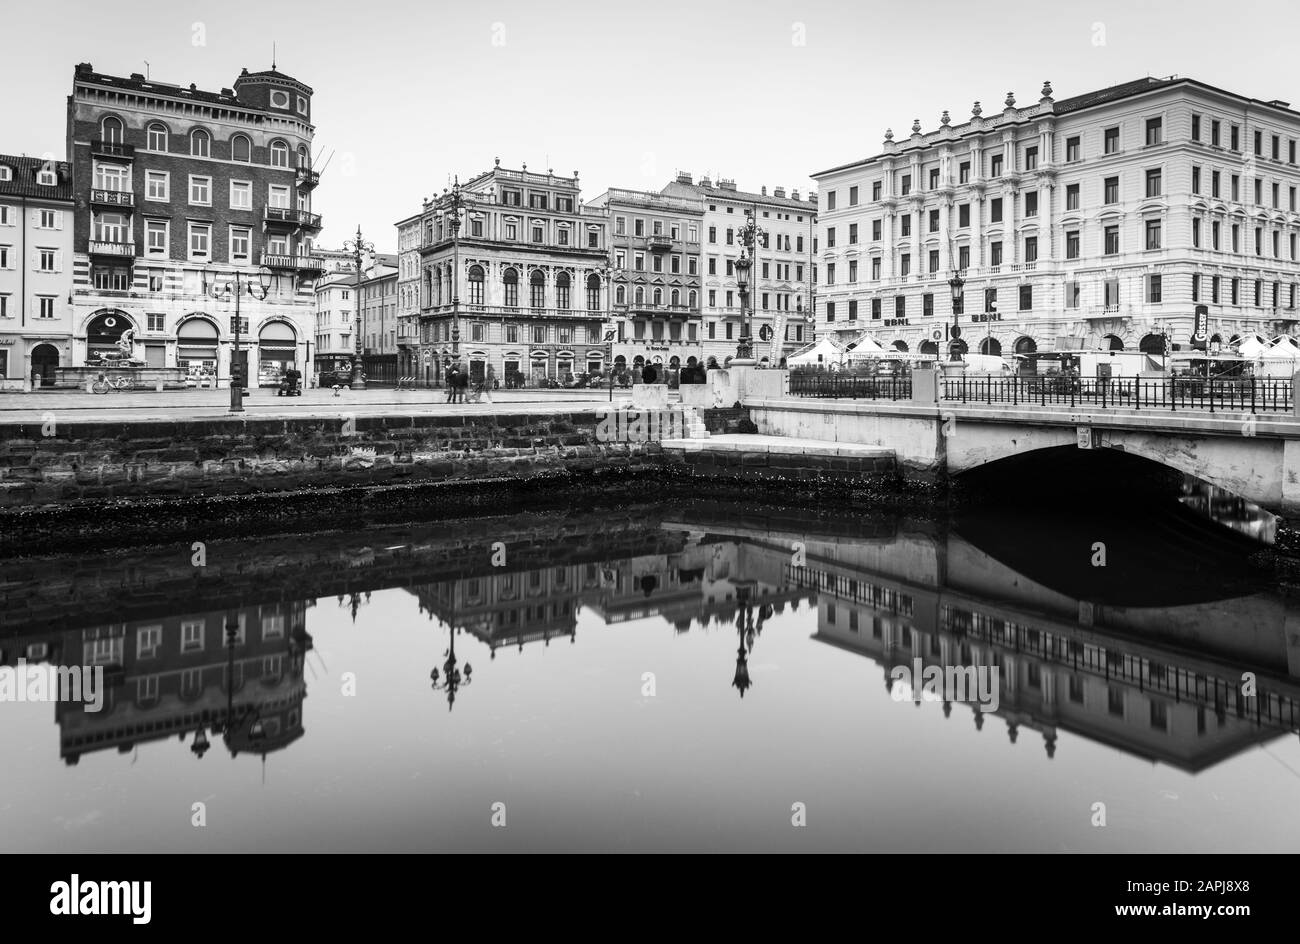 Décembre 2016 - Trieste, Italie : vieux bâtiments historiques reflètent dans l'eau miroir, Grand Canal dans le centre-ville de Trieste, noir et blanc, paysage urbain Banque D'Images